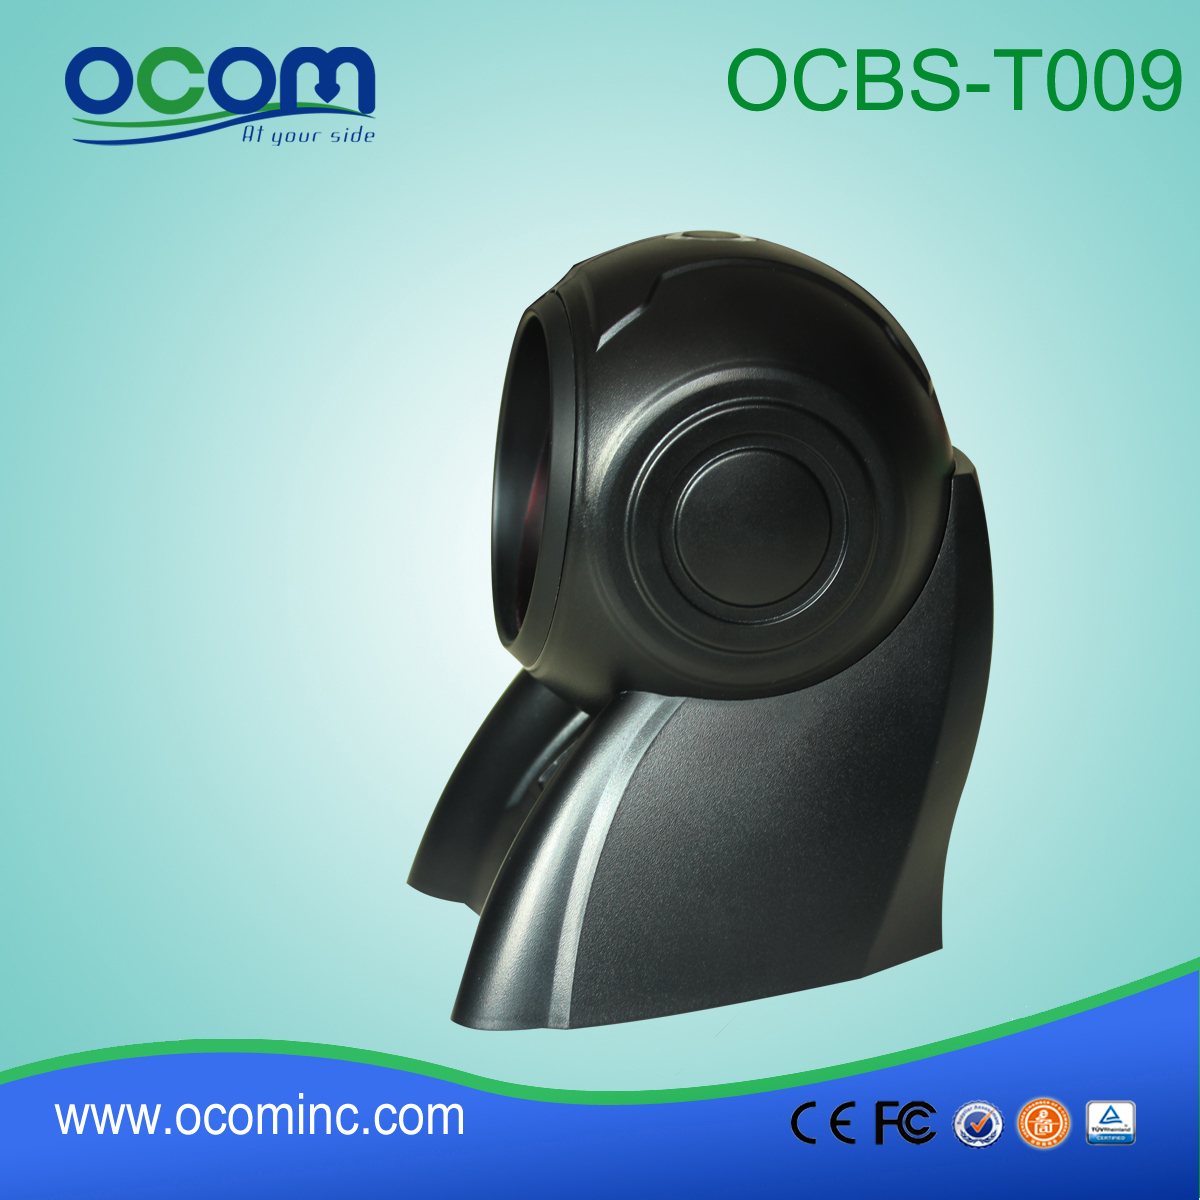 OCBs-T009-рабочего всенаправленный сканер штрих-кода автоматически